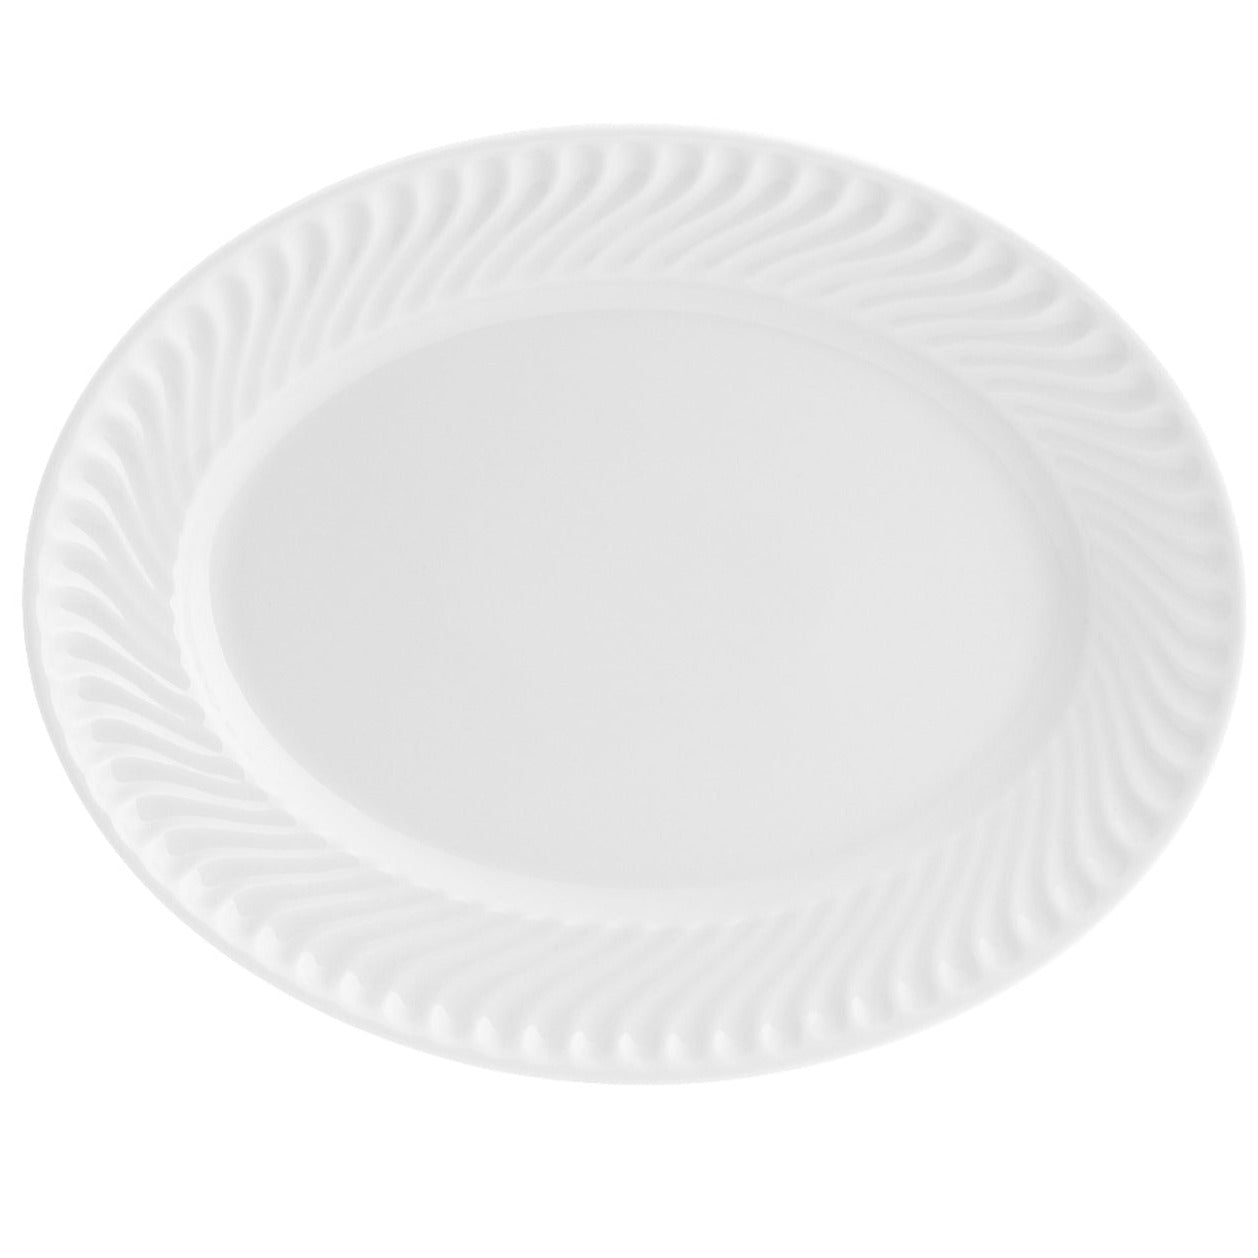 Sagres - Medium Oval Platter - LAZADO